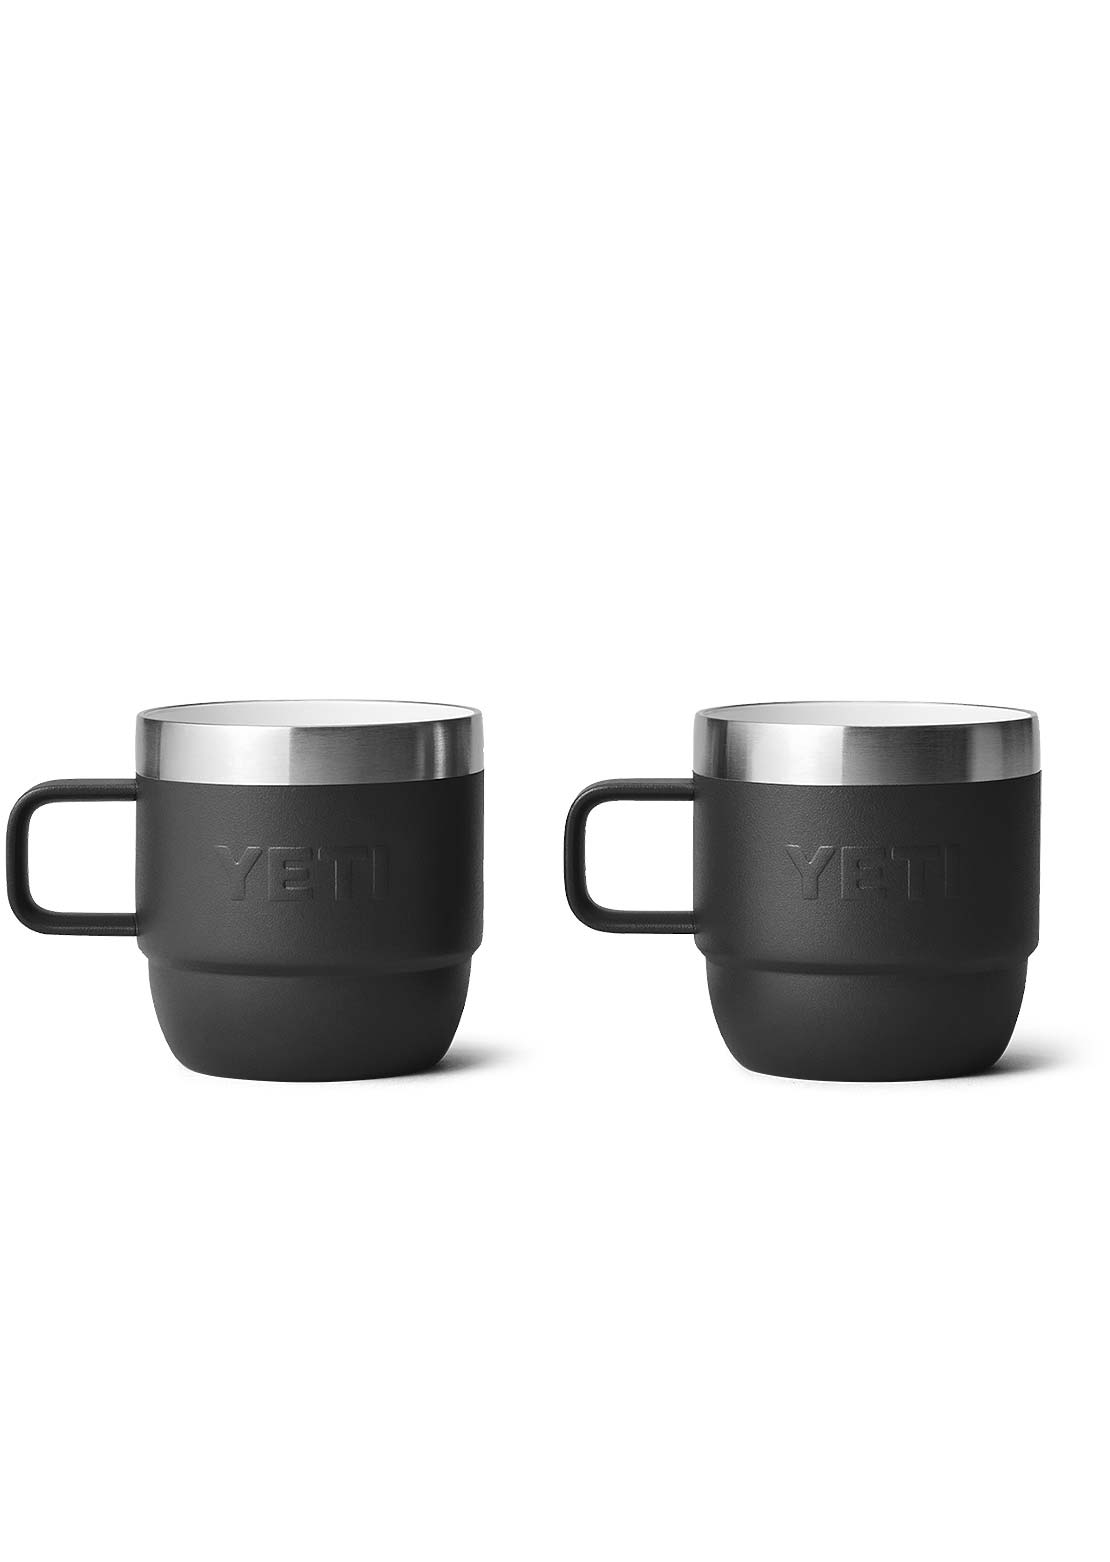 Yeti Rambler 6 Oz Espresso 2Pk Mug Black